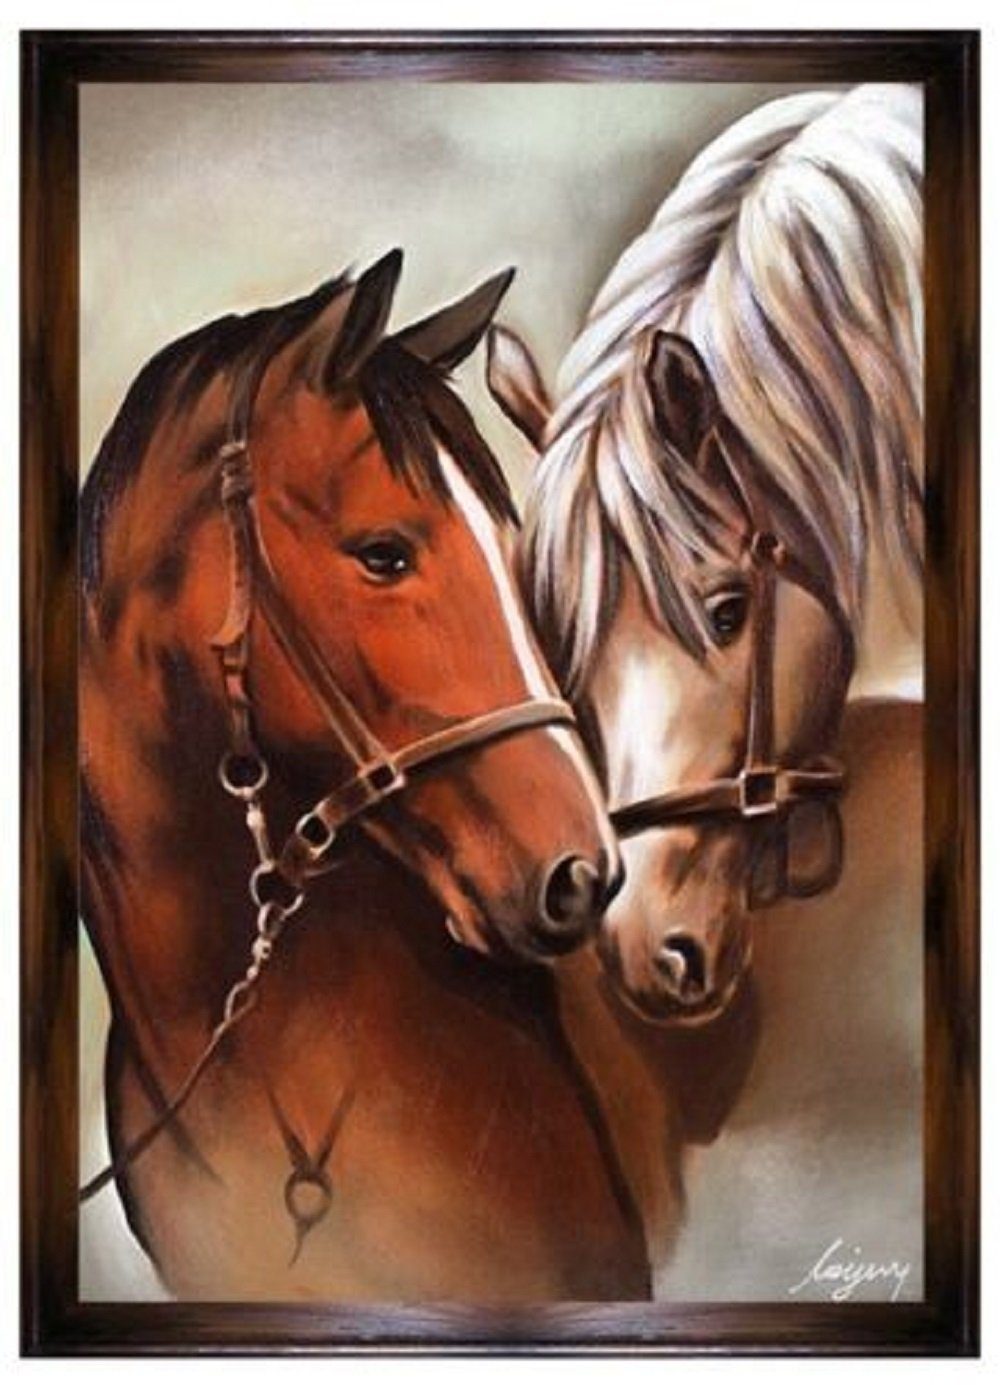 JVmoebel Ölbild Gemälde Ölbild Ölbilder Liebes Pferd Bilder Pferde 200 x 140 cm G94769, Kunst